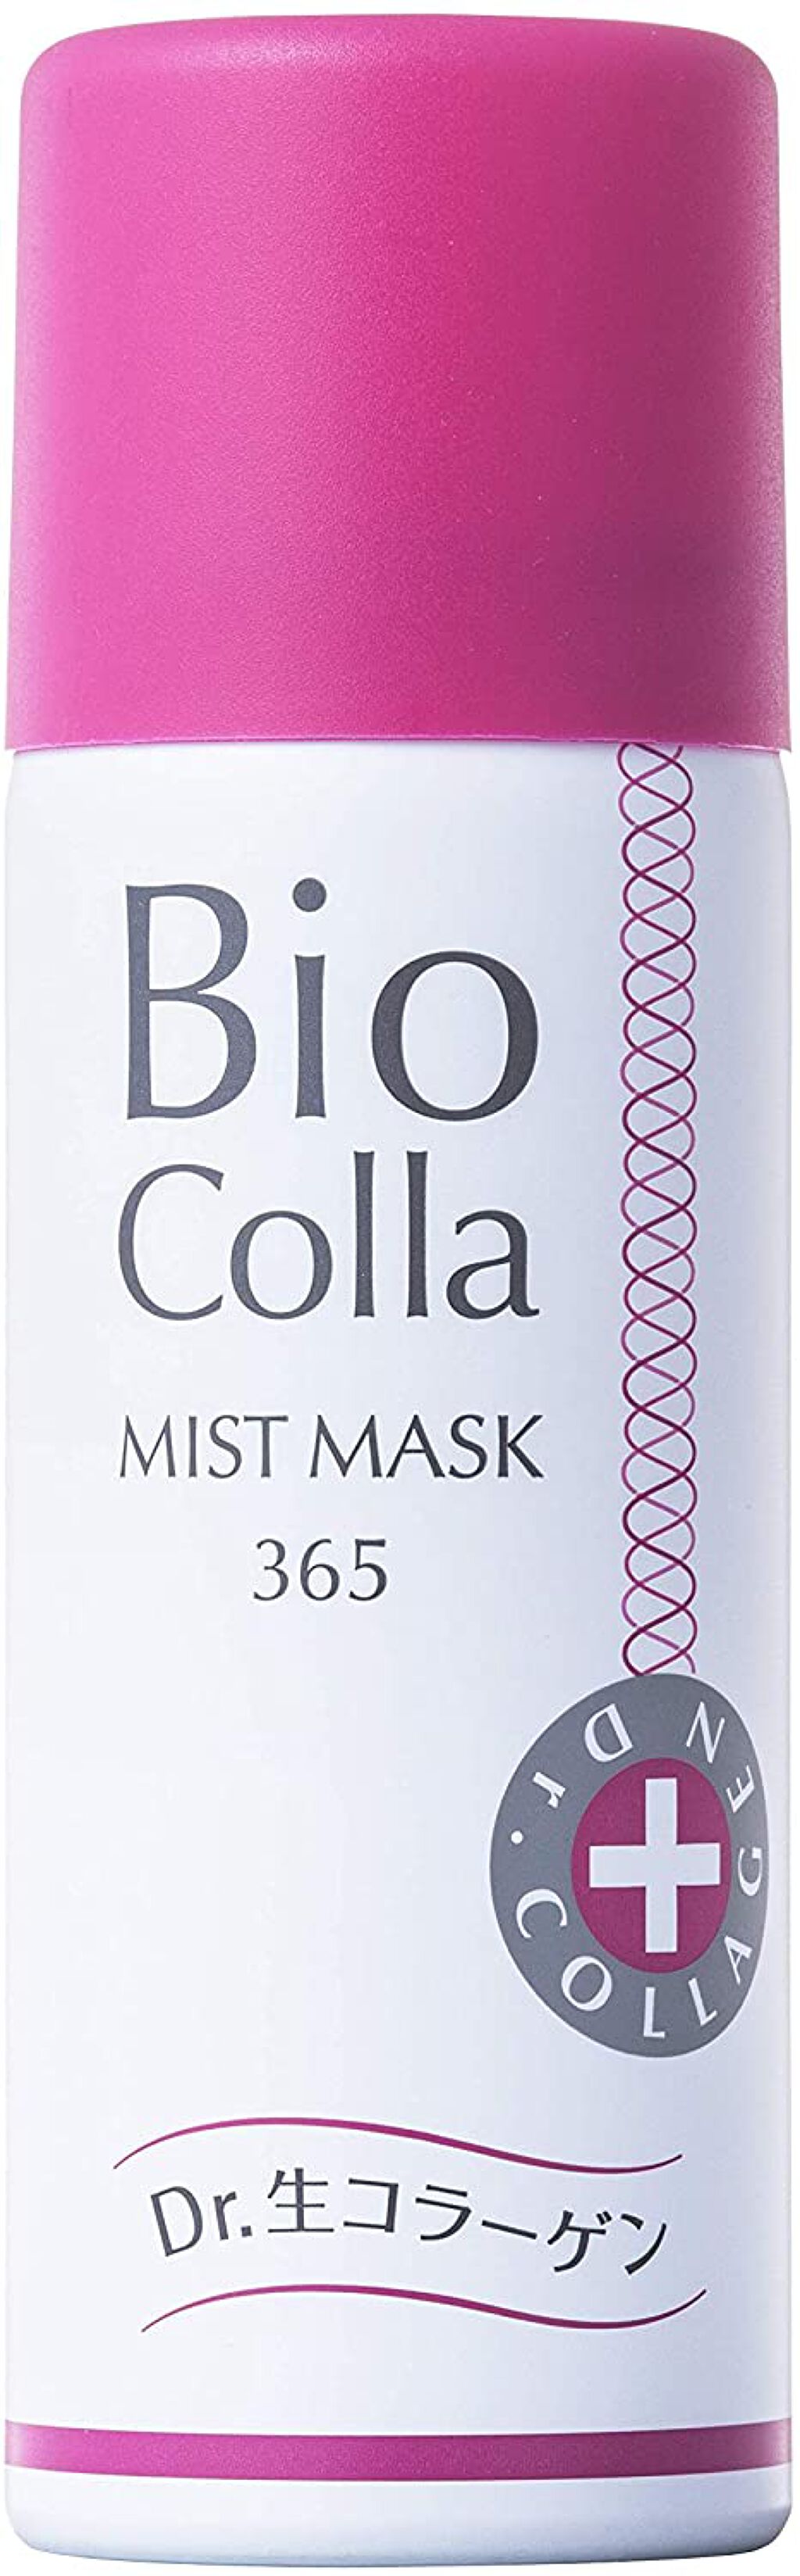 【試してみた】生コラーゲン ミストマスク 365 / ビオコラのリアル